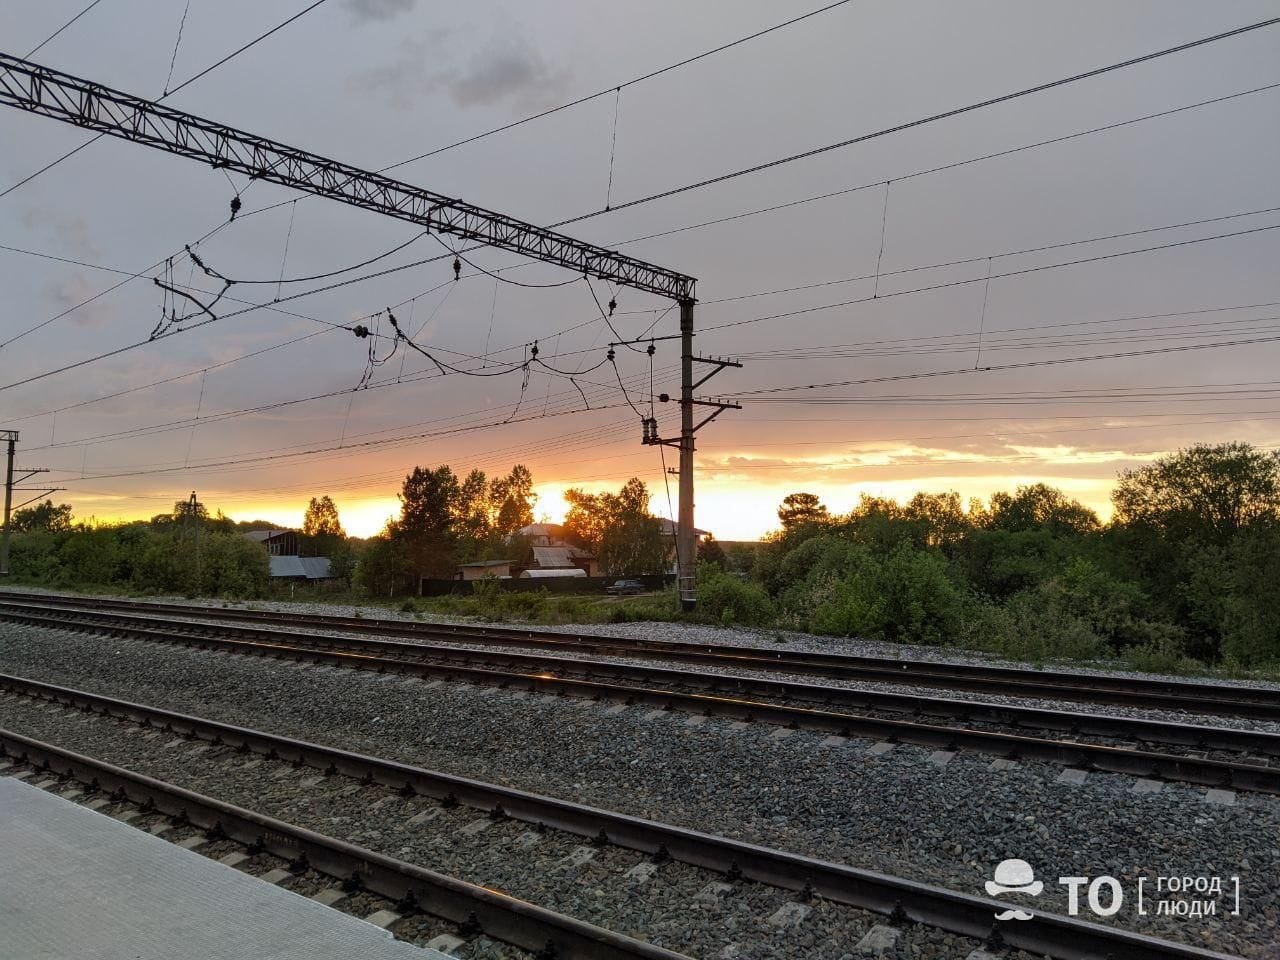 Происшествия, Томские новости, поезд попал под сбили наезд происшествия на железной дороге в Томске Ночью в Томске поезд сбил пьяного томича